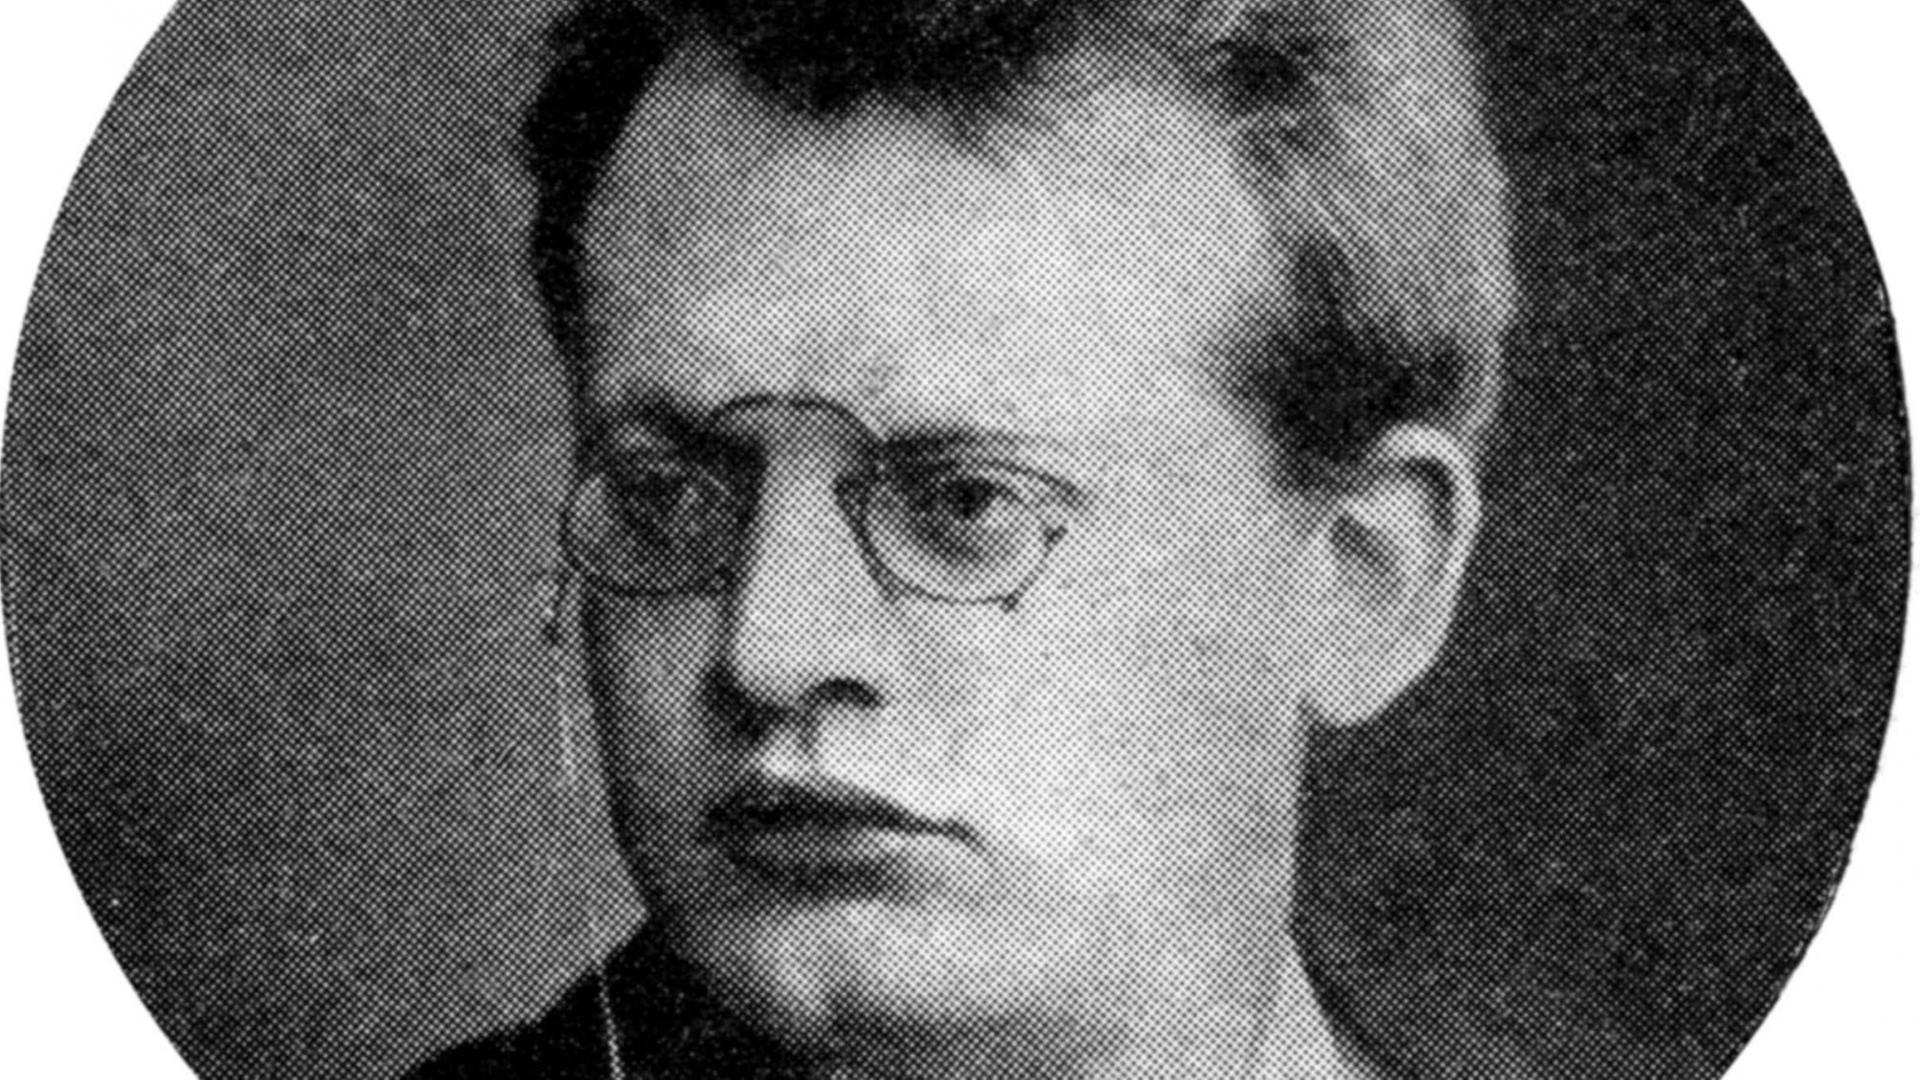 Schwarz-weiß-Aufnahme eines Mannes mit Brille, üppigen Lippen und einem ernsten Gesichtsausdruck.